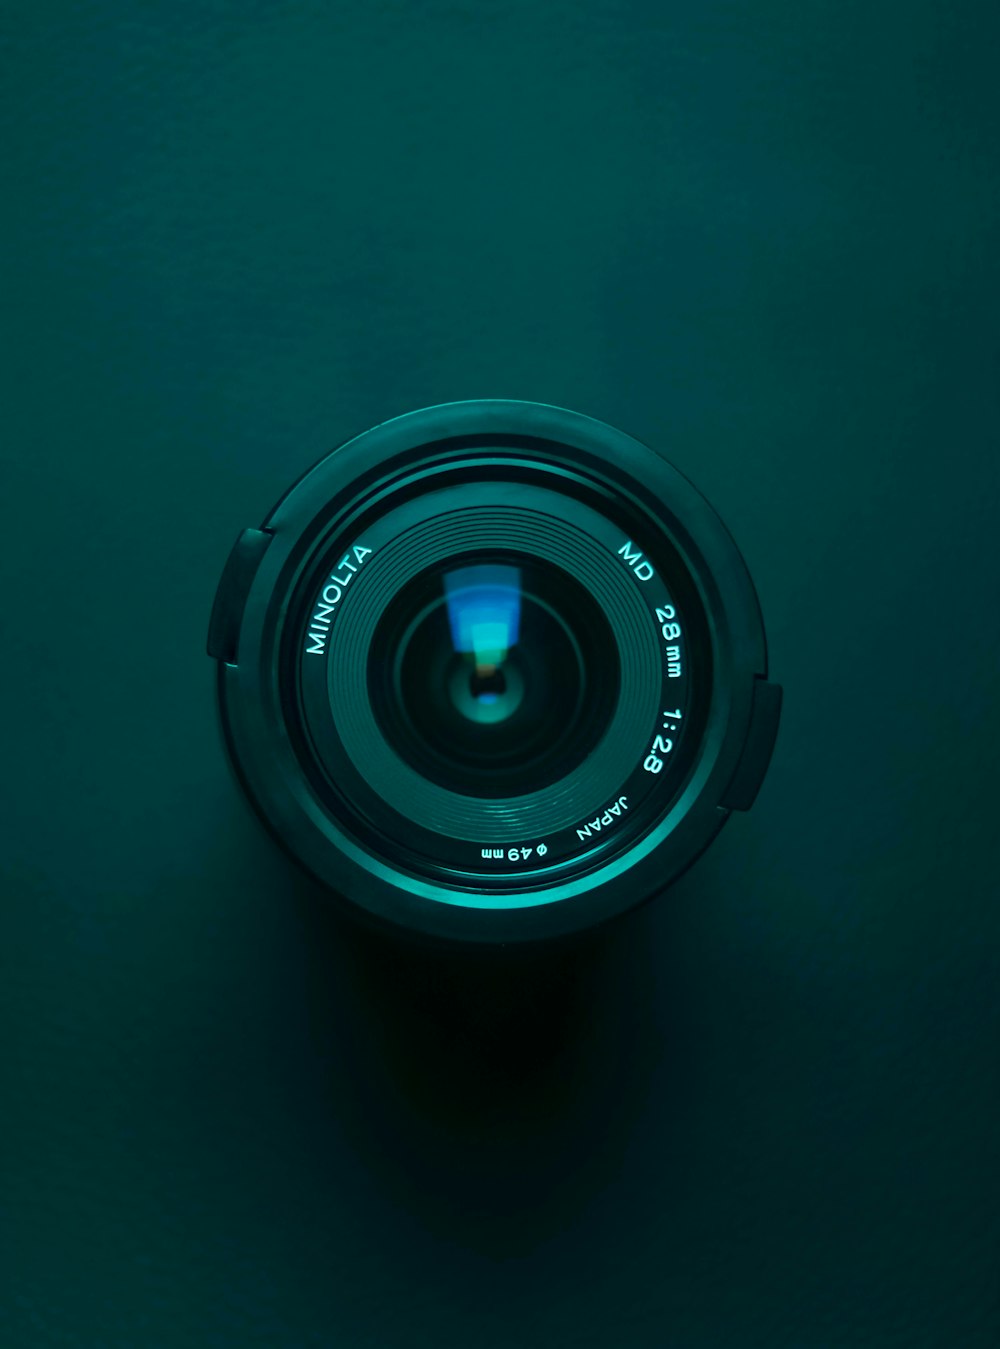  Beste Spy Camera kopen: dit is de juiste keuze voor 2022  thumbnail